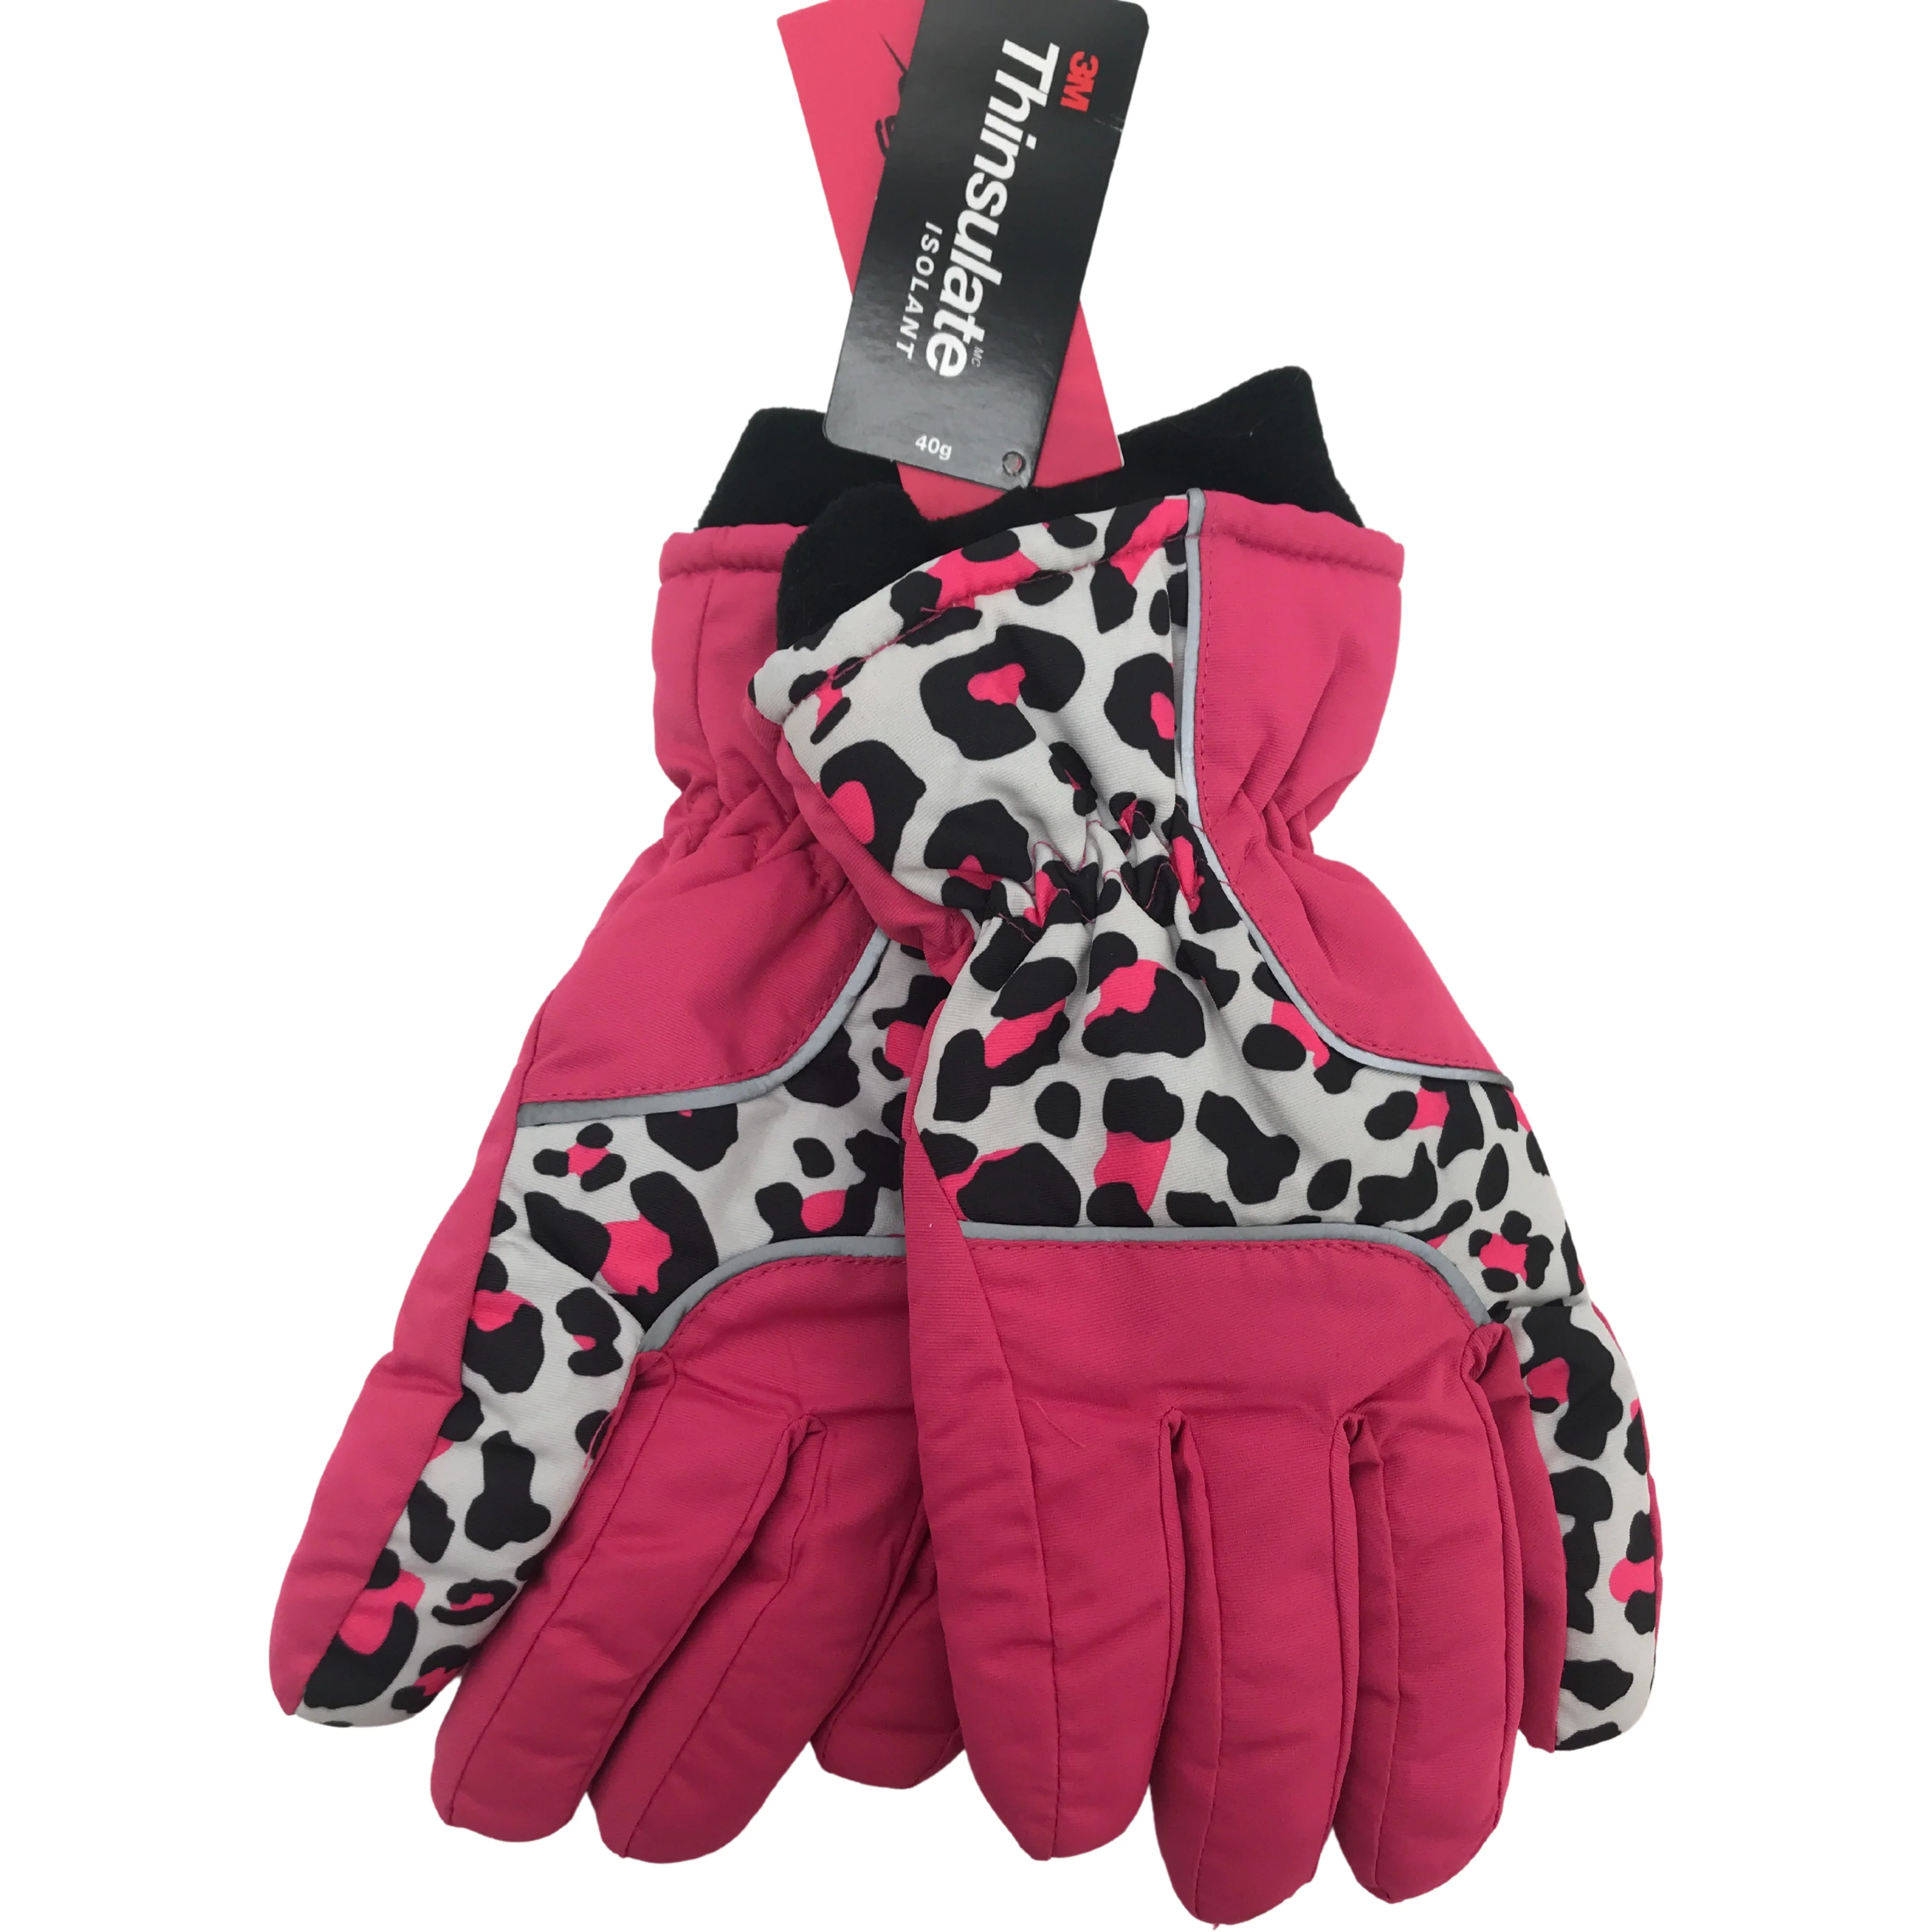 Minus Zero Children's Winter Gloves / Girl's Gloves / Pink & Leopard / Size 7-16